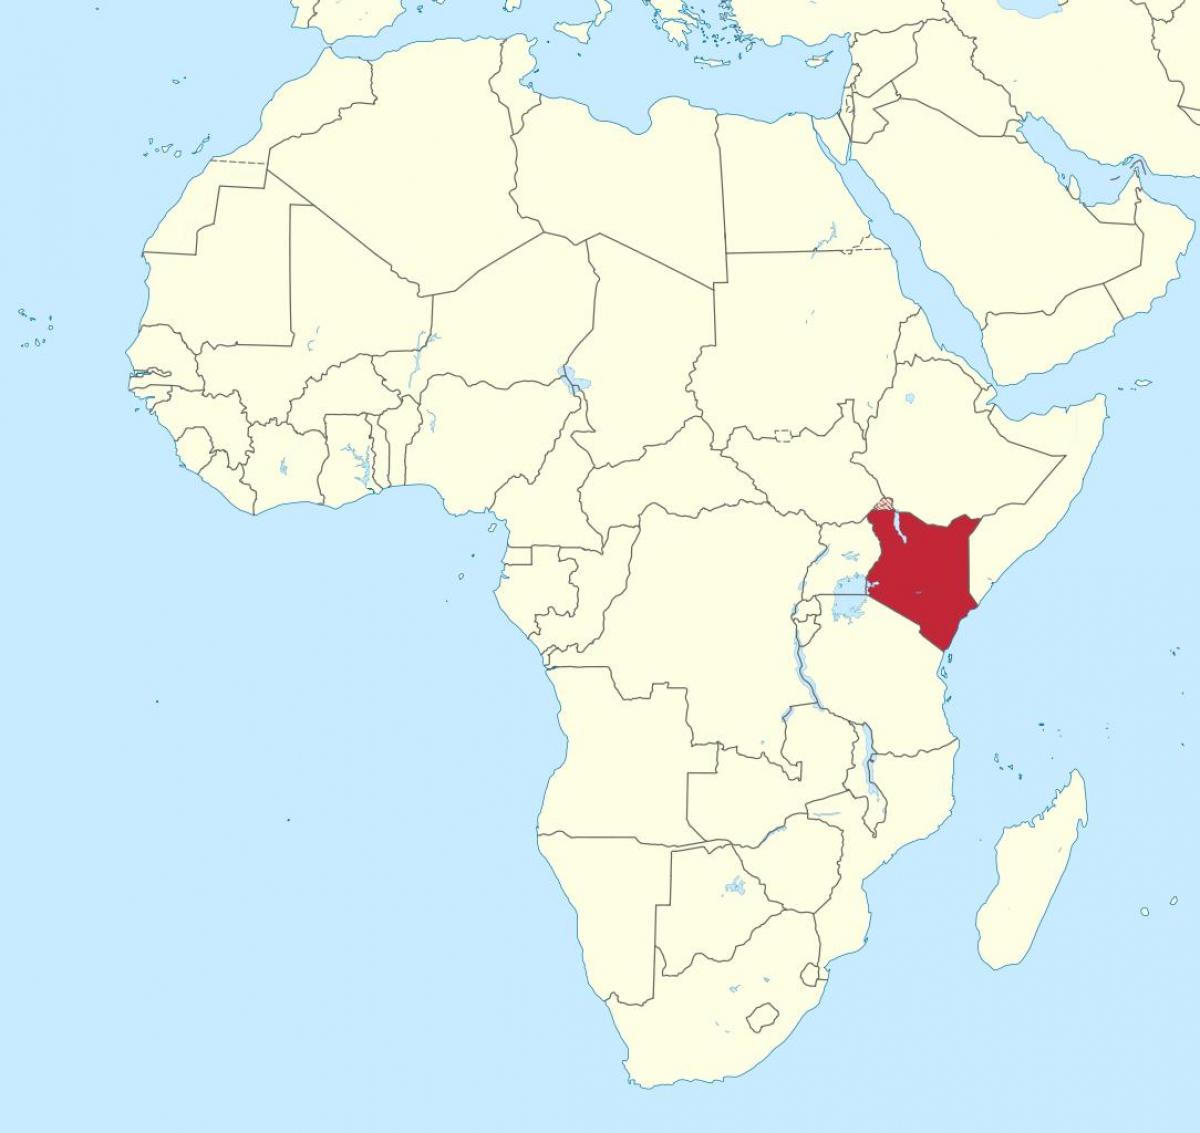 karta Afrike, pokazujući Keniji